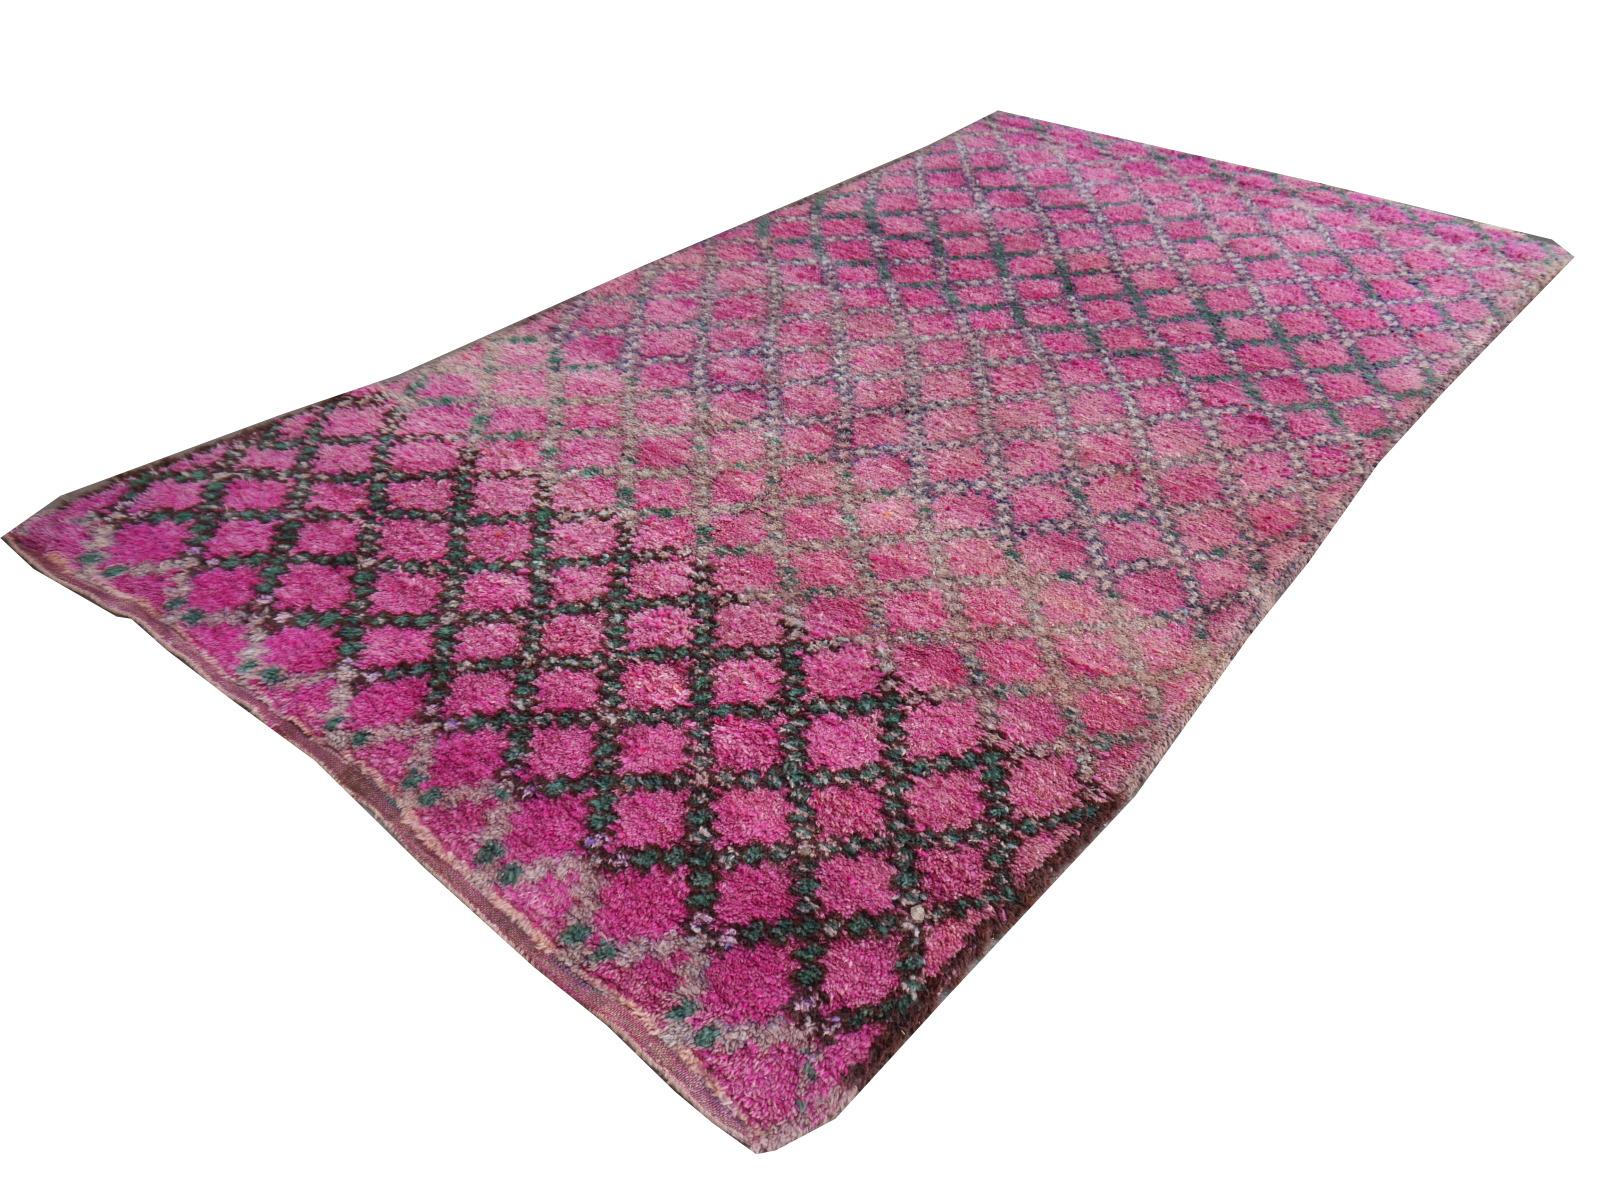 Ein seltener alter Berberteppich aus den 1980er-1990er Jahren.

Dieser atemberaubende Berberteppich mit abstraktem Muster stammt aus der Epoche des späten 20. Jahrhunderts. Es hat eine fantastisch glänzende und weiche Wolle. Sie wurde von Frauen aus